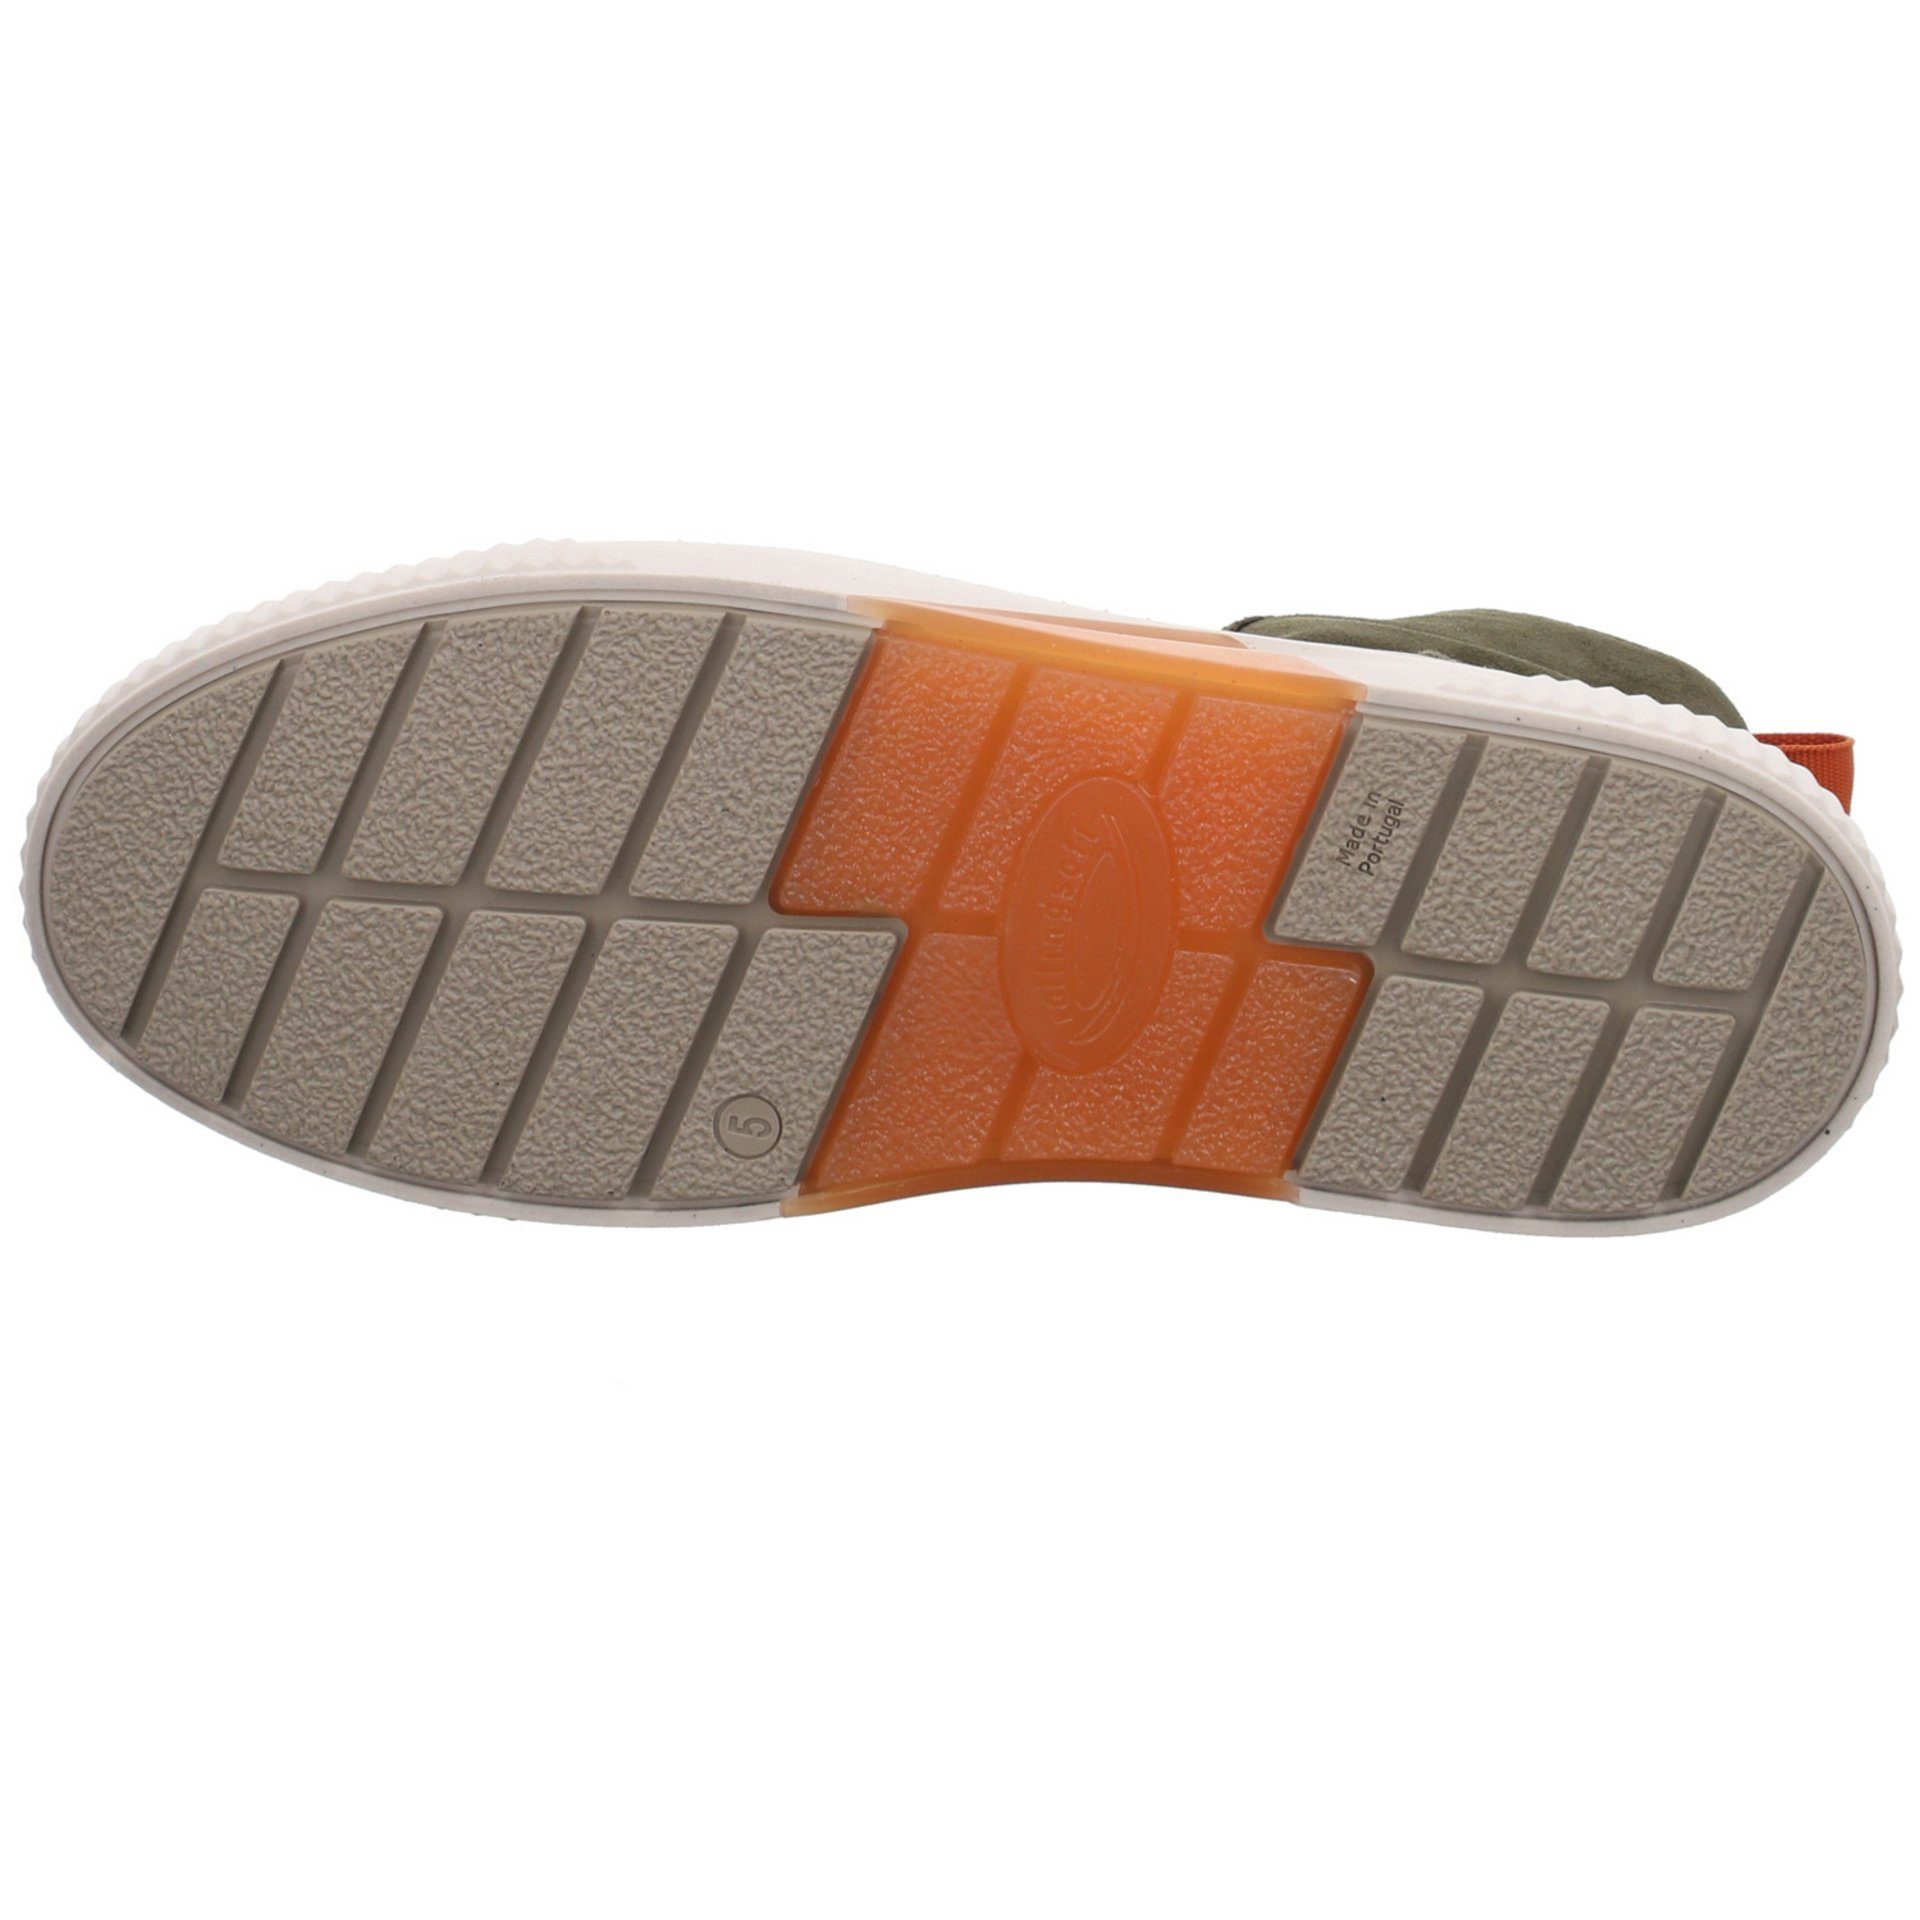 Gabor Damen Stiefel Schuhe Boots Elegant Klassisch Stiefel Veloursleder bosco/orange (07301826)